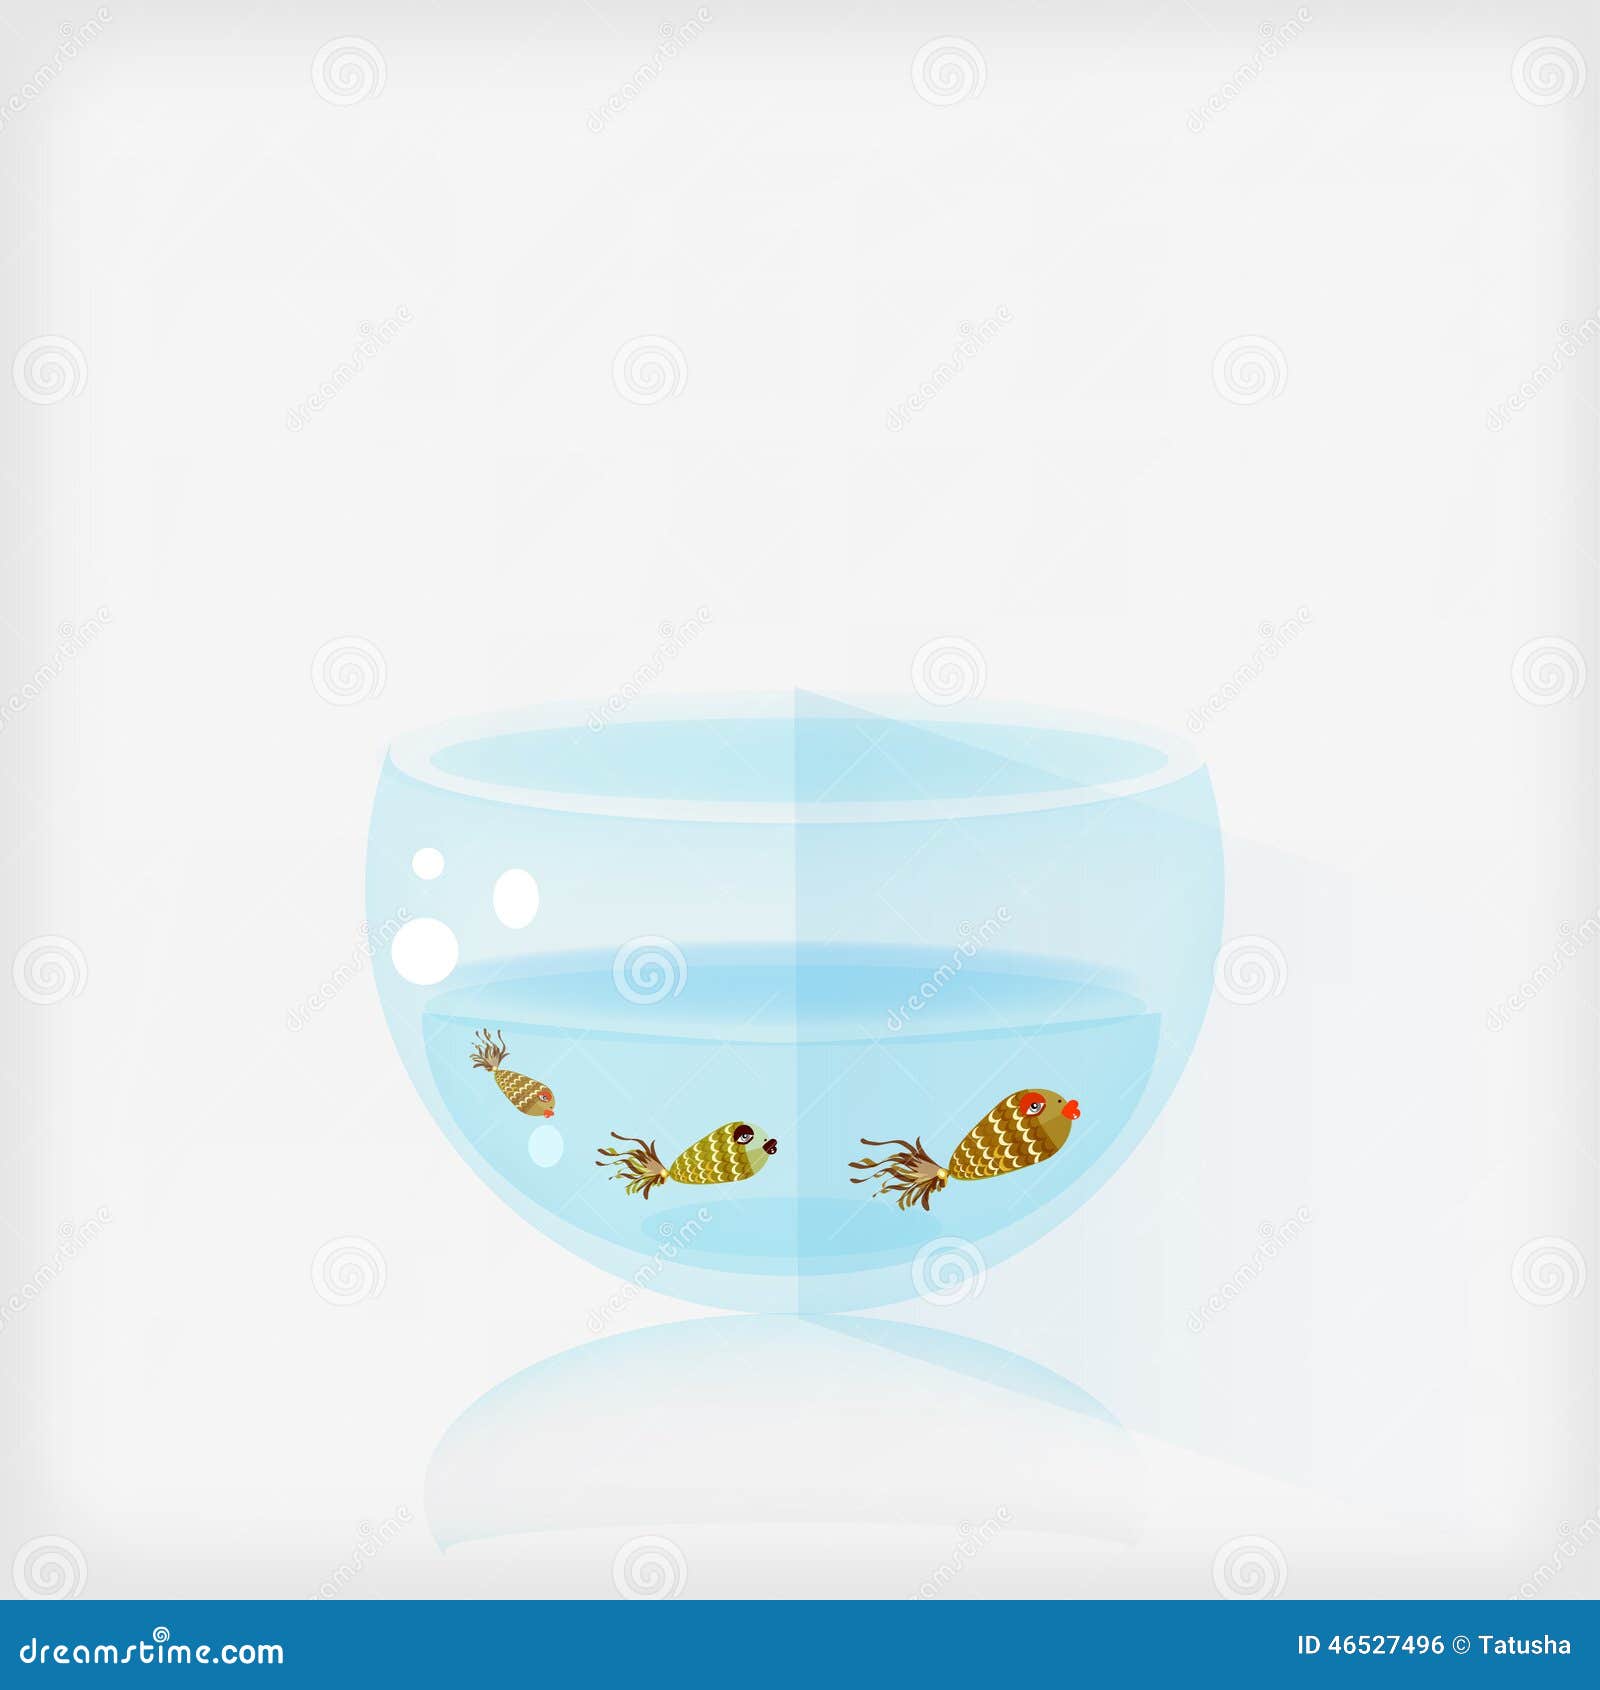 Aquarian Fishes Stock Illustrations – 16 Aquarian Fishes Stock  Illustrations, Vectors & Clipart - Dreamstime